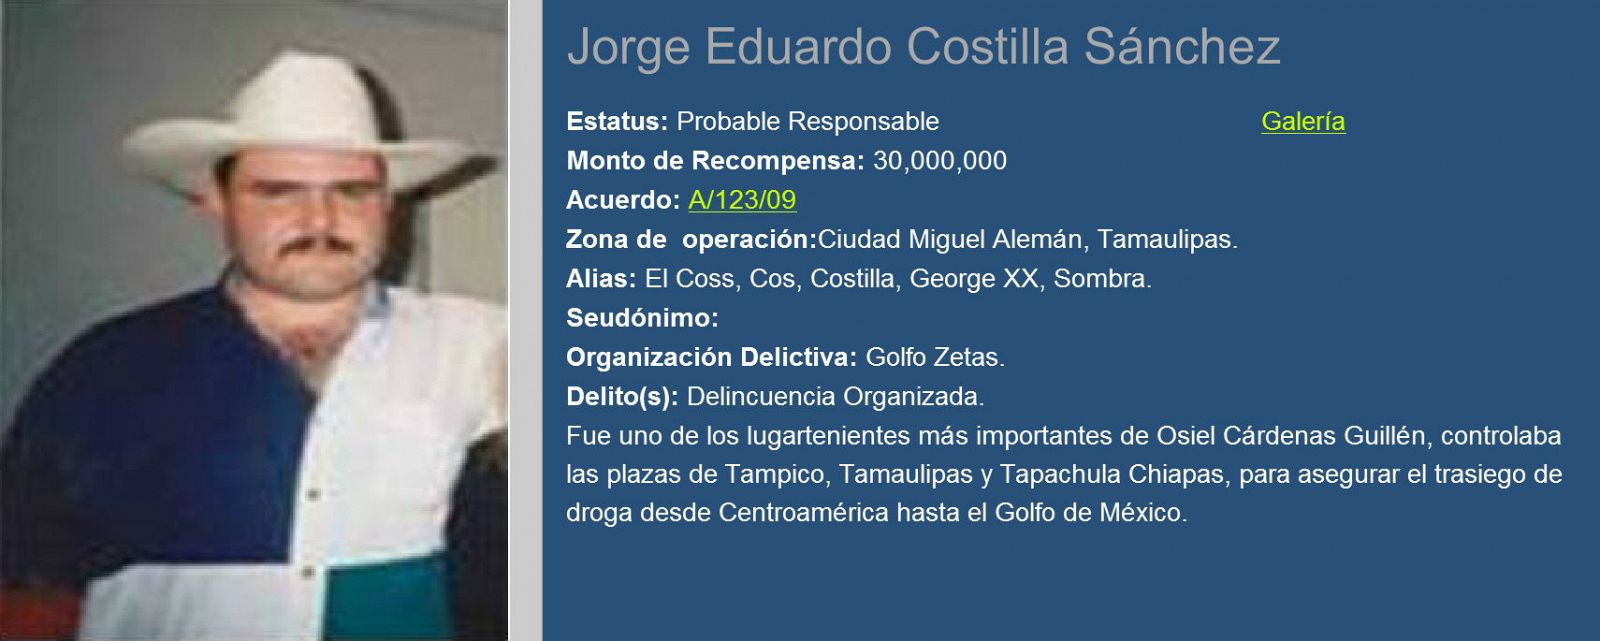 Ficha de Jorge Eduardo Costilla Sánchez, alias "El Coss", jefe del cartel del Golfo, en el portal de la Procuraduría General de la República (PGR) mexicana